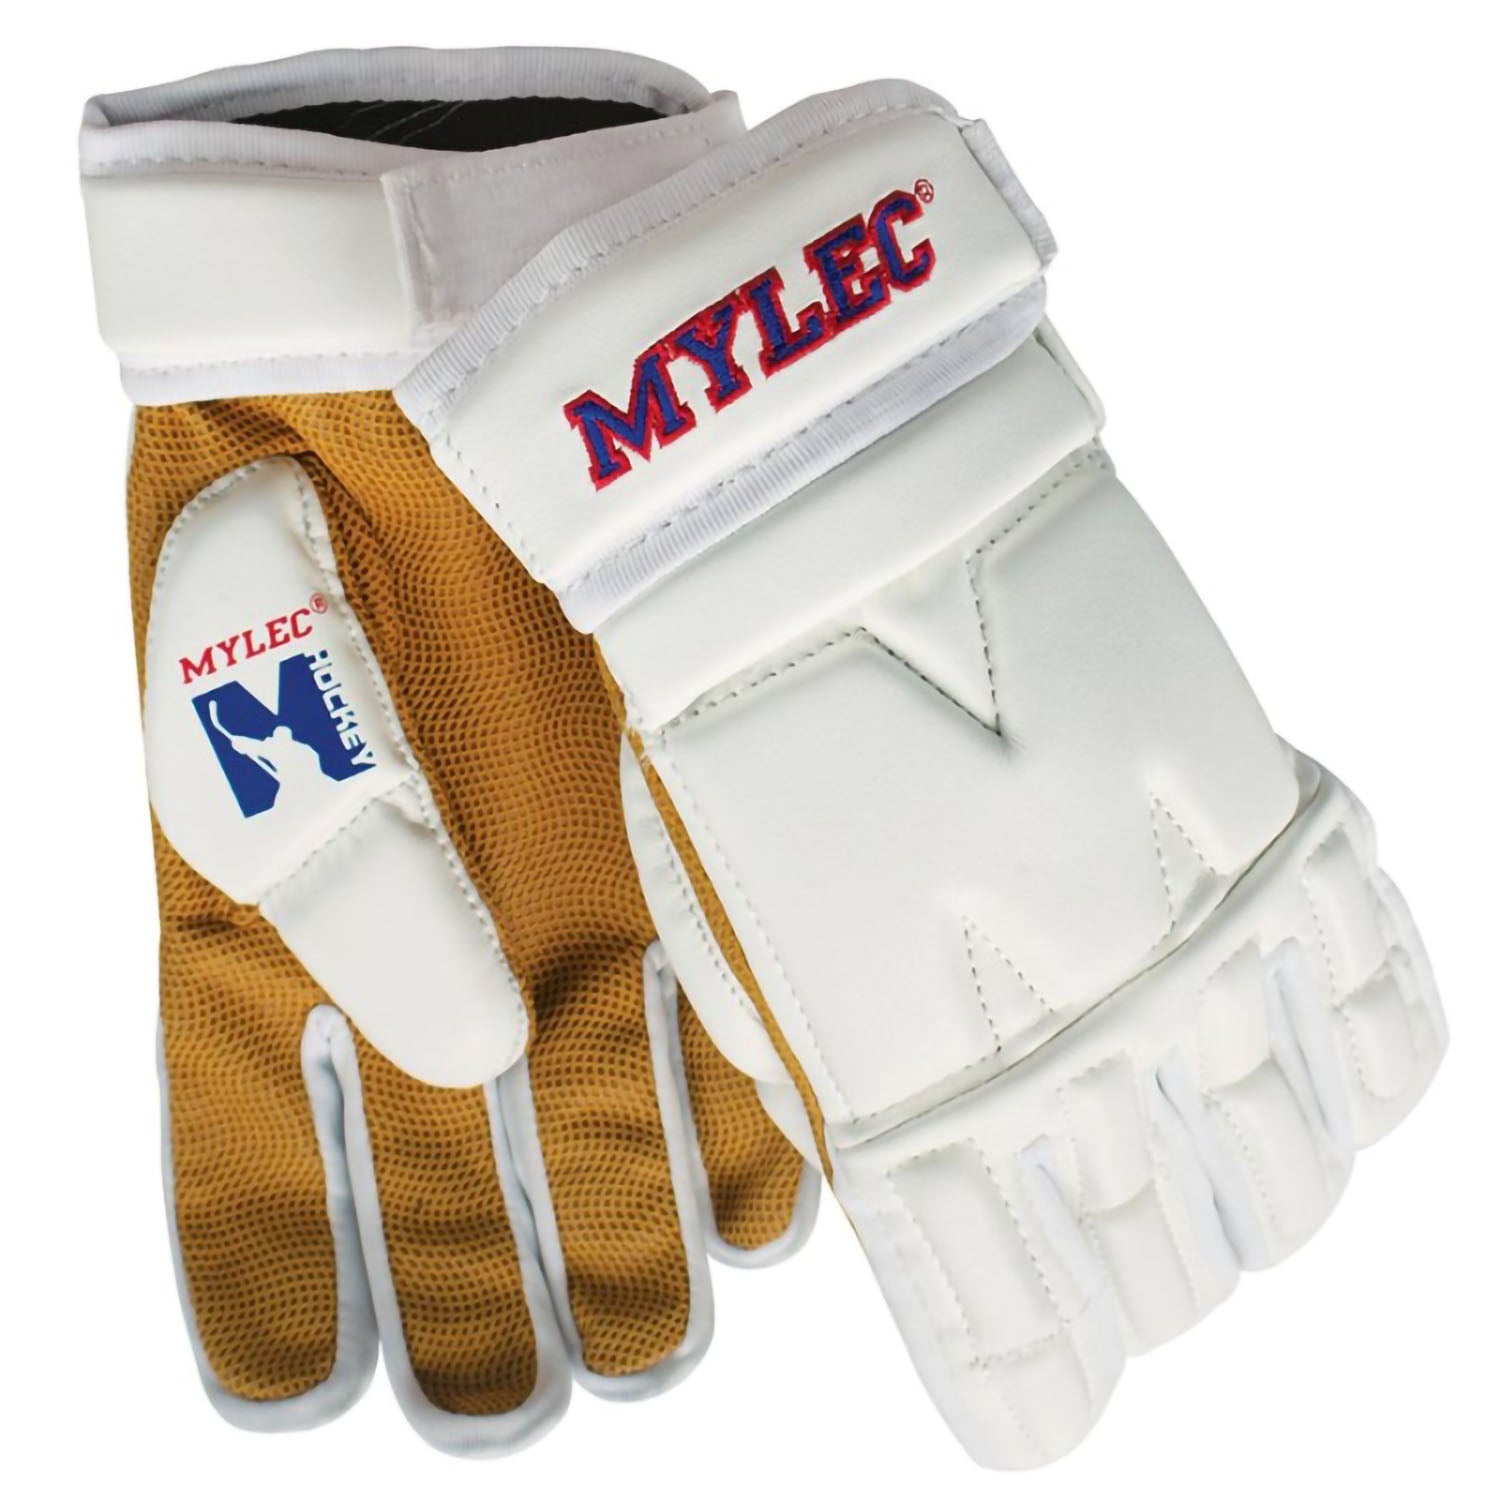 Mylec MK3 11" Large Roller Hockey, Dek Hockey, Street Hockey Player Gloves - White - Pro-Distributing